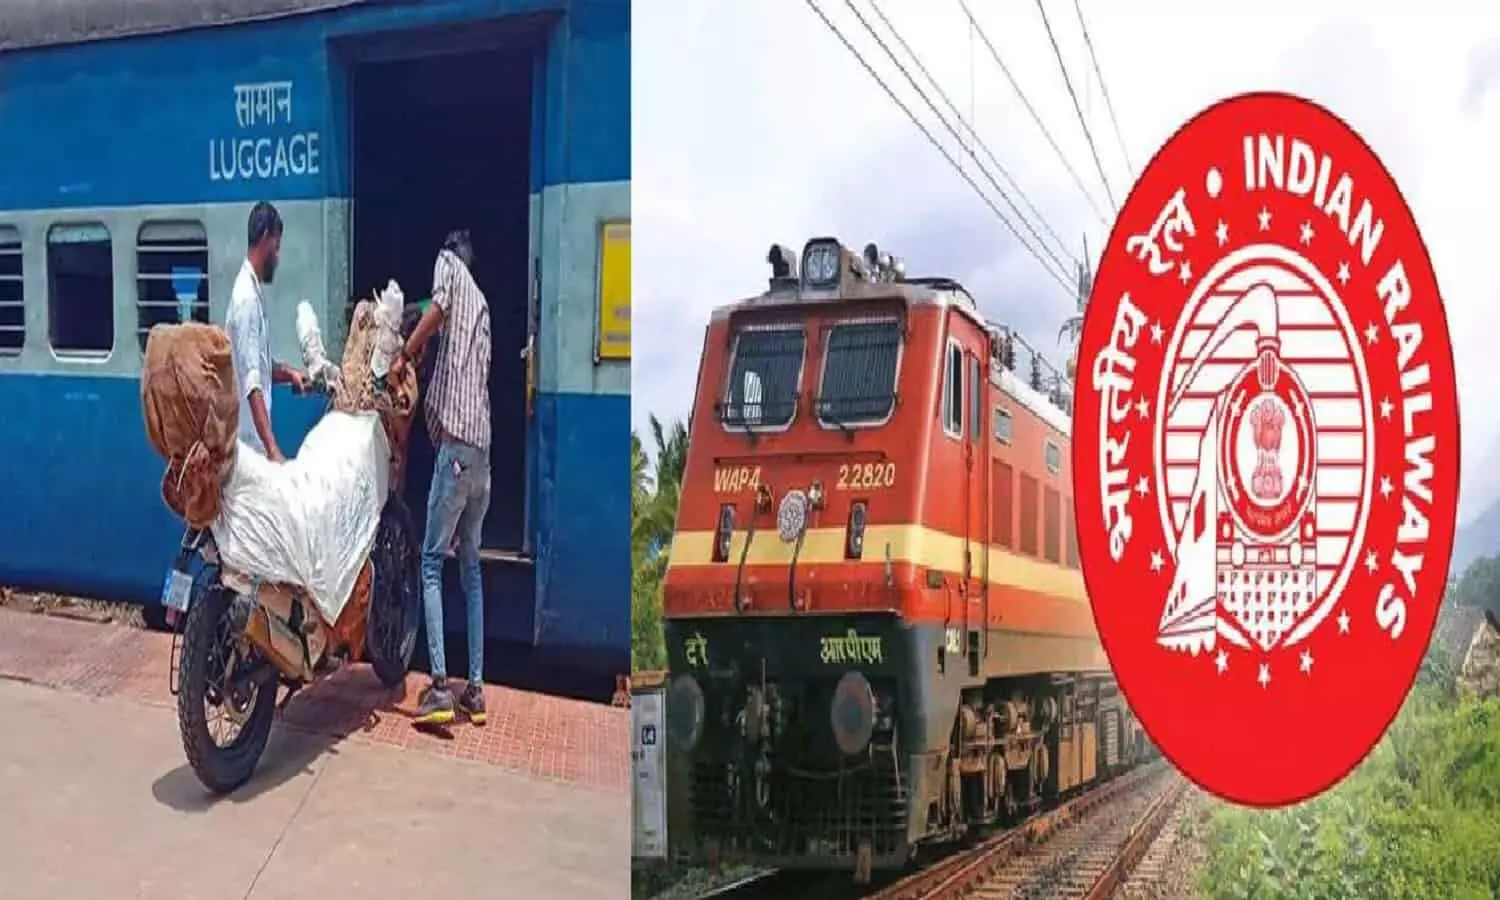 Indian railways: ट्रेन से दूसरे शहर ऐसे भेज सकते हैं अपनी बाइक, जानें कितना लगेगा किराया?